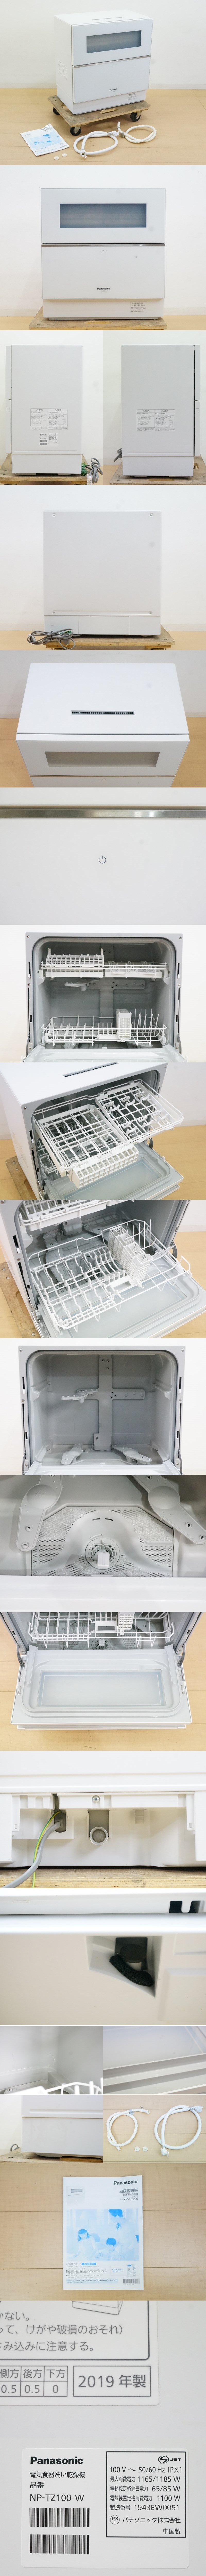 東ハ:【パナソニック】食器洗い乾燥機 標準食器点数40点 NP-TZ100-W